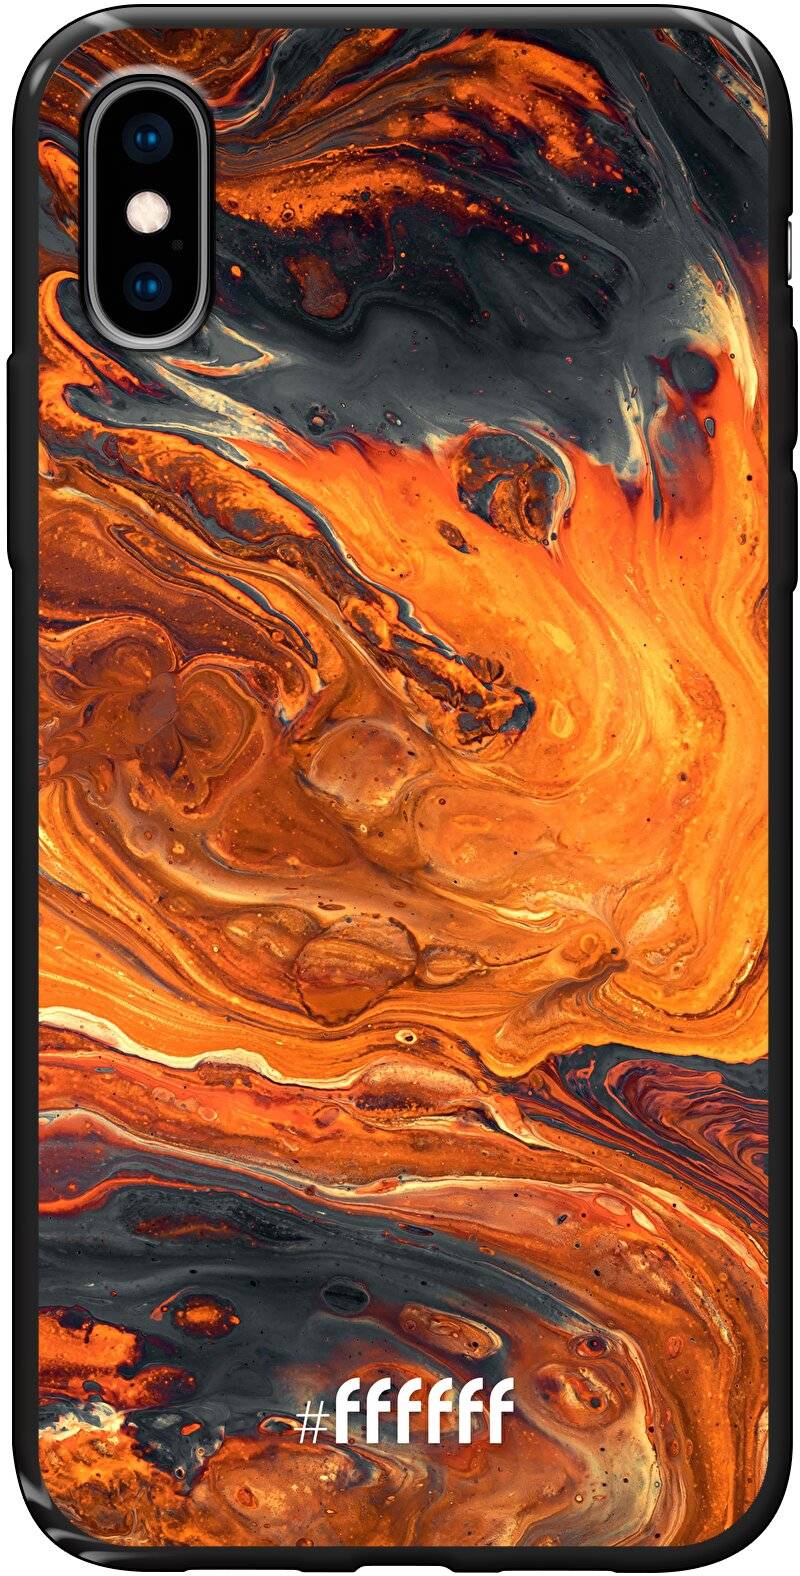 Magma River iPhone X